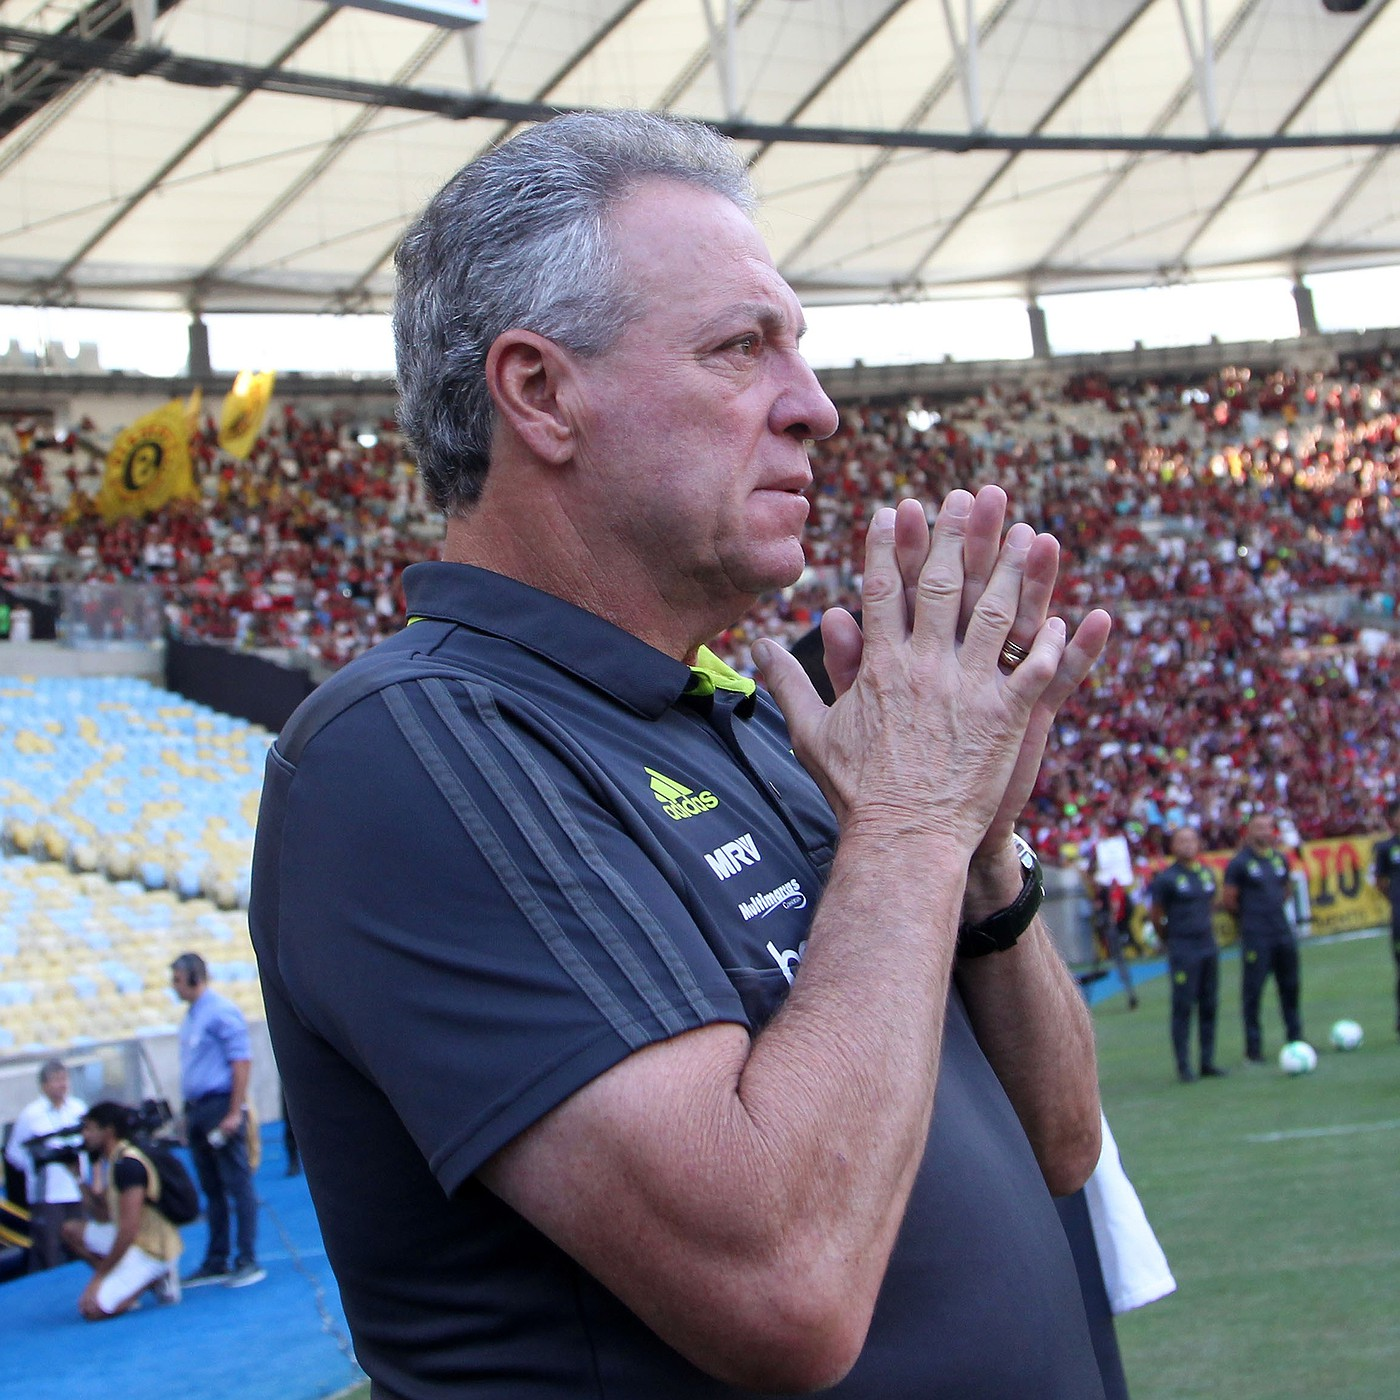 Fala, Fera #11 - A faixa de capitão da Seleção e a turbulência no Flamengo